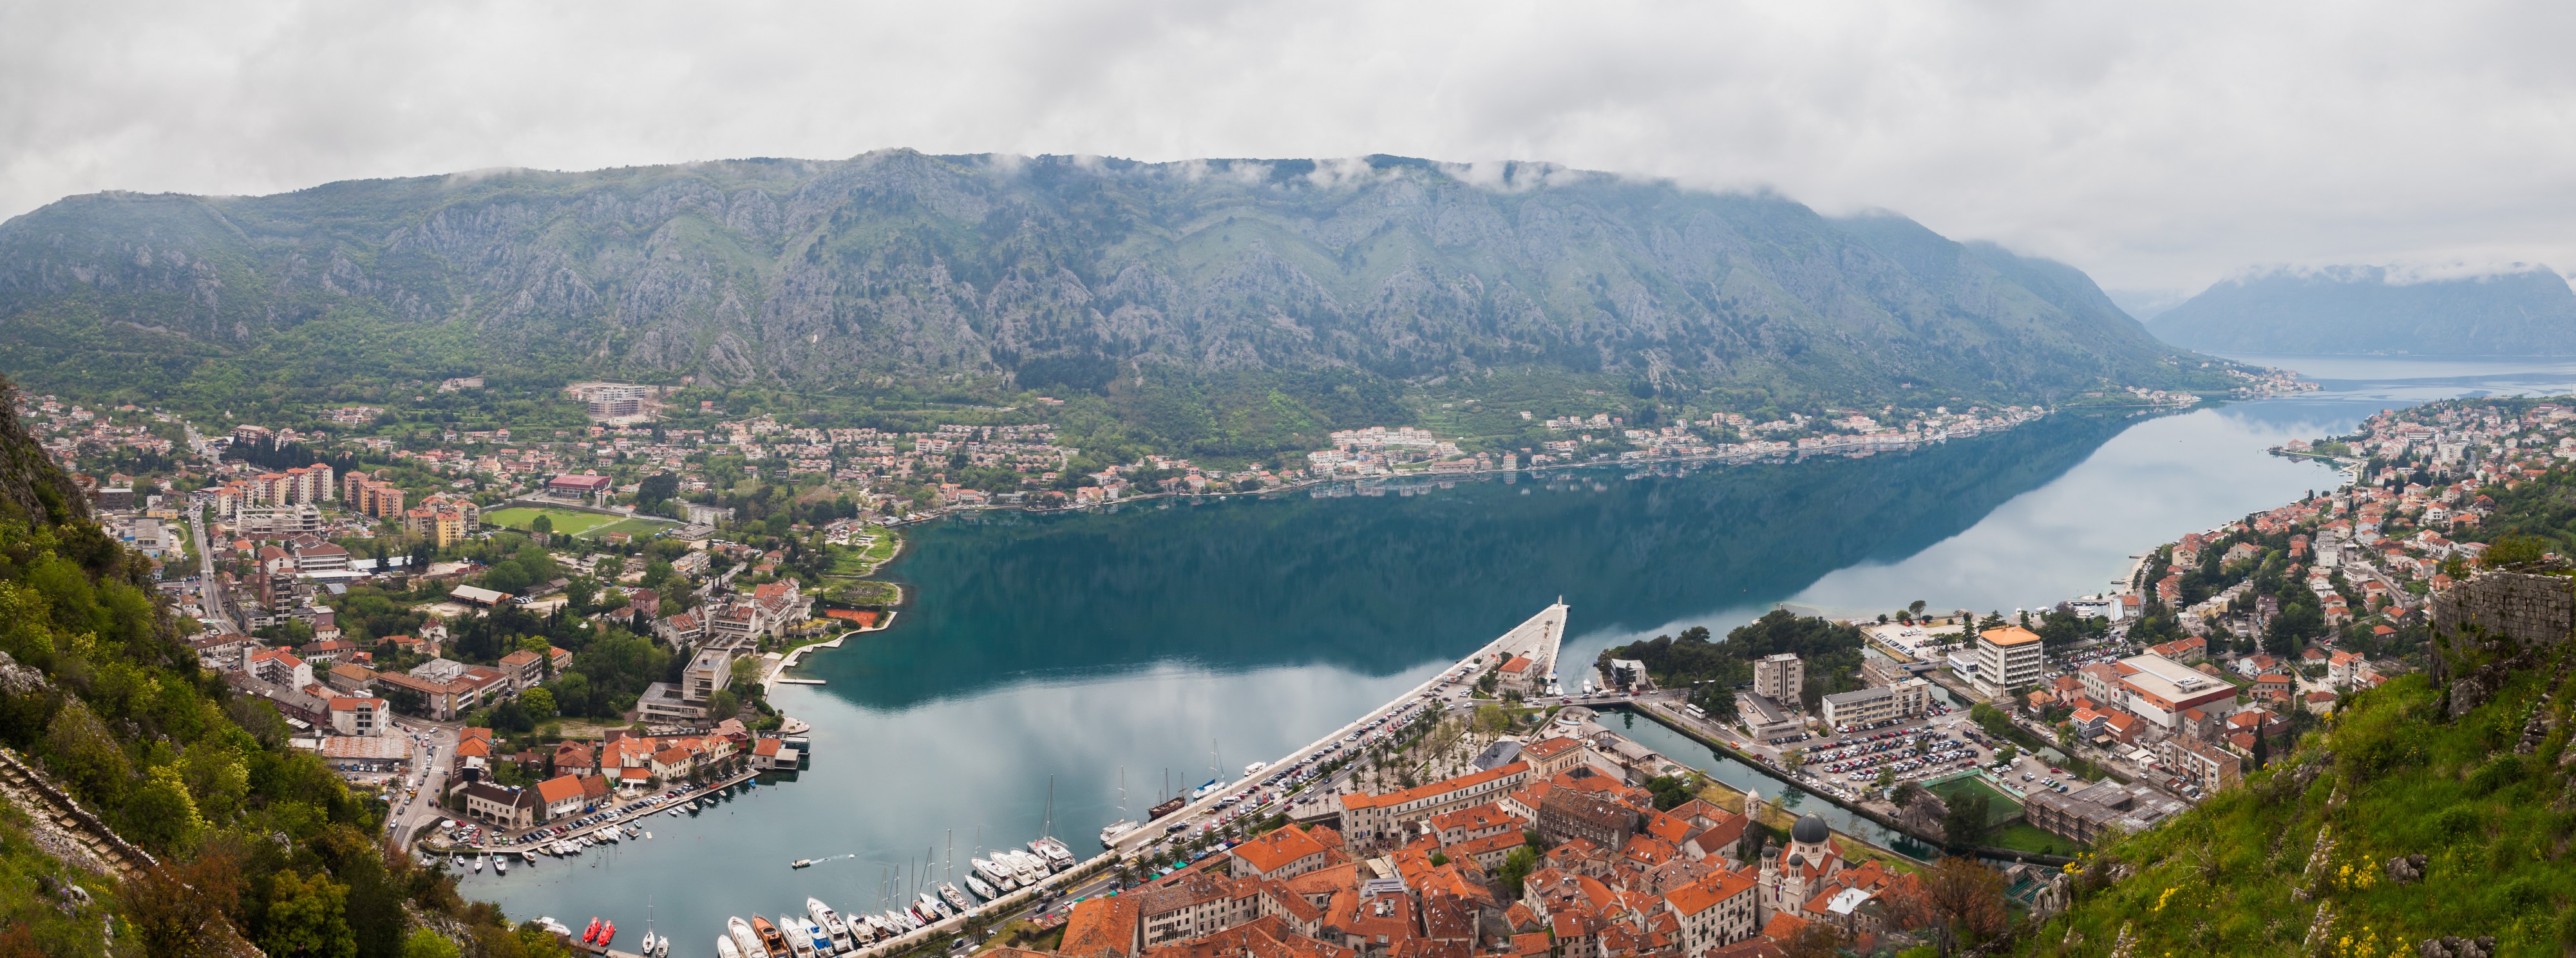 Vista de Kotor, Bahía de Kotor, Montenegro, 2014-04-19, DD 08-10 PAN